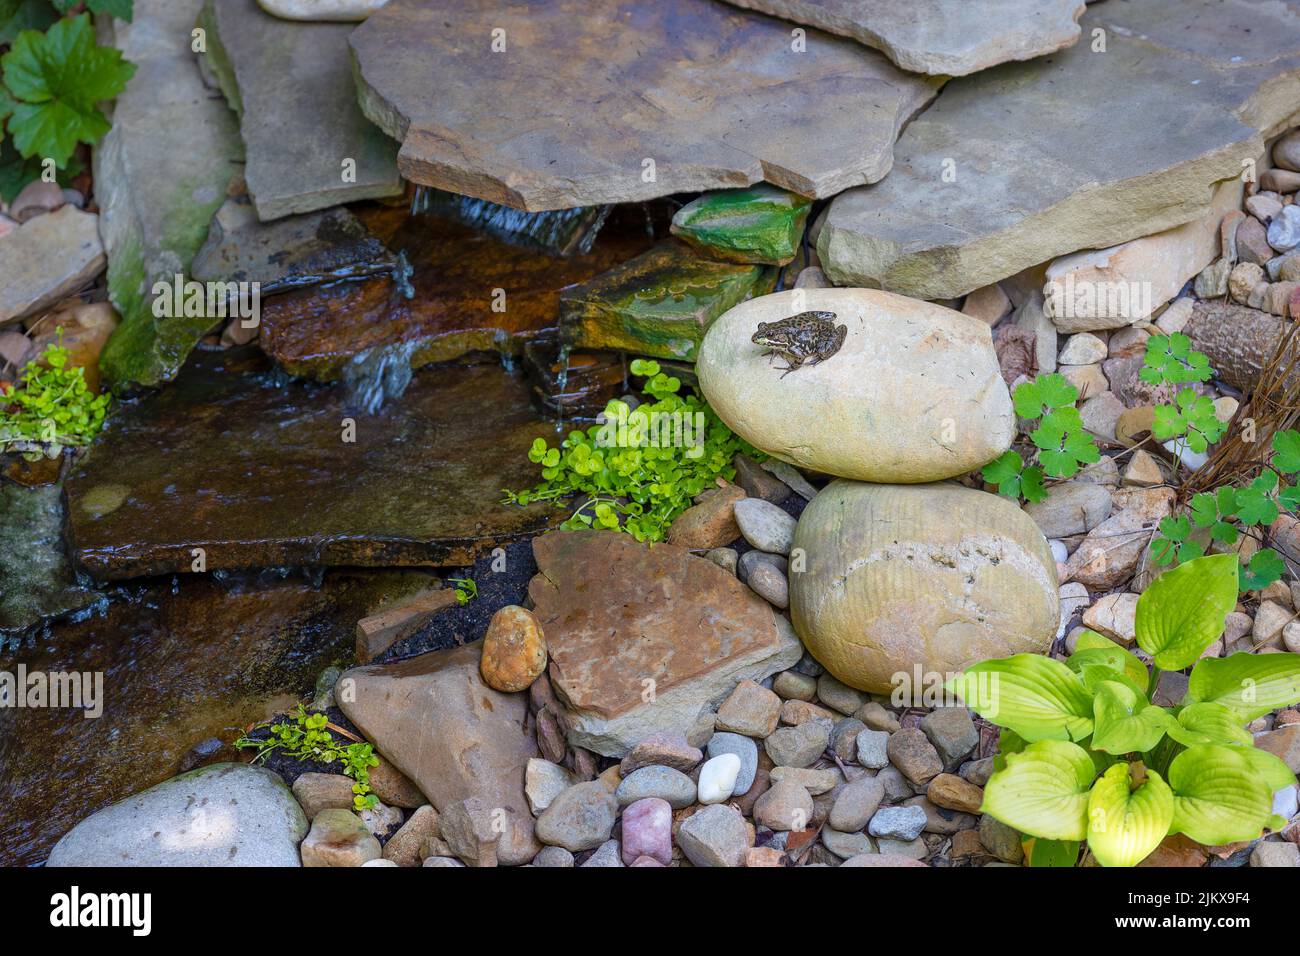 Ein winziger Frosch sitzt auf einem Felsen neben einem kleinen Wasserspiel in einem Hinterhof. Stockfoto